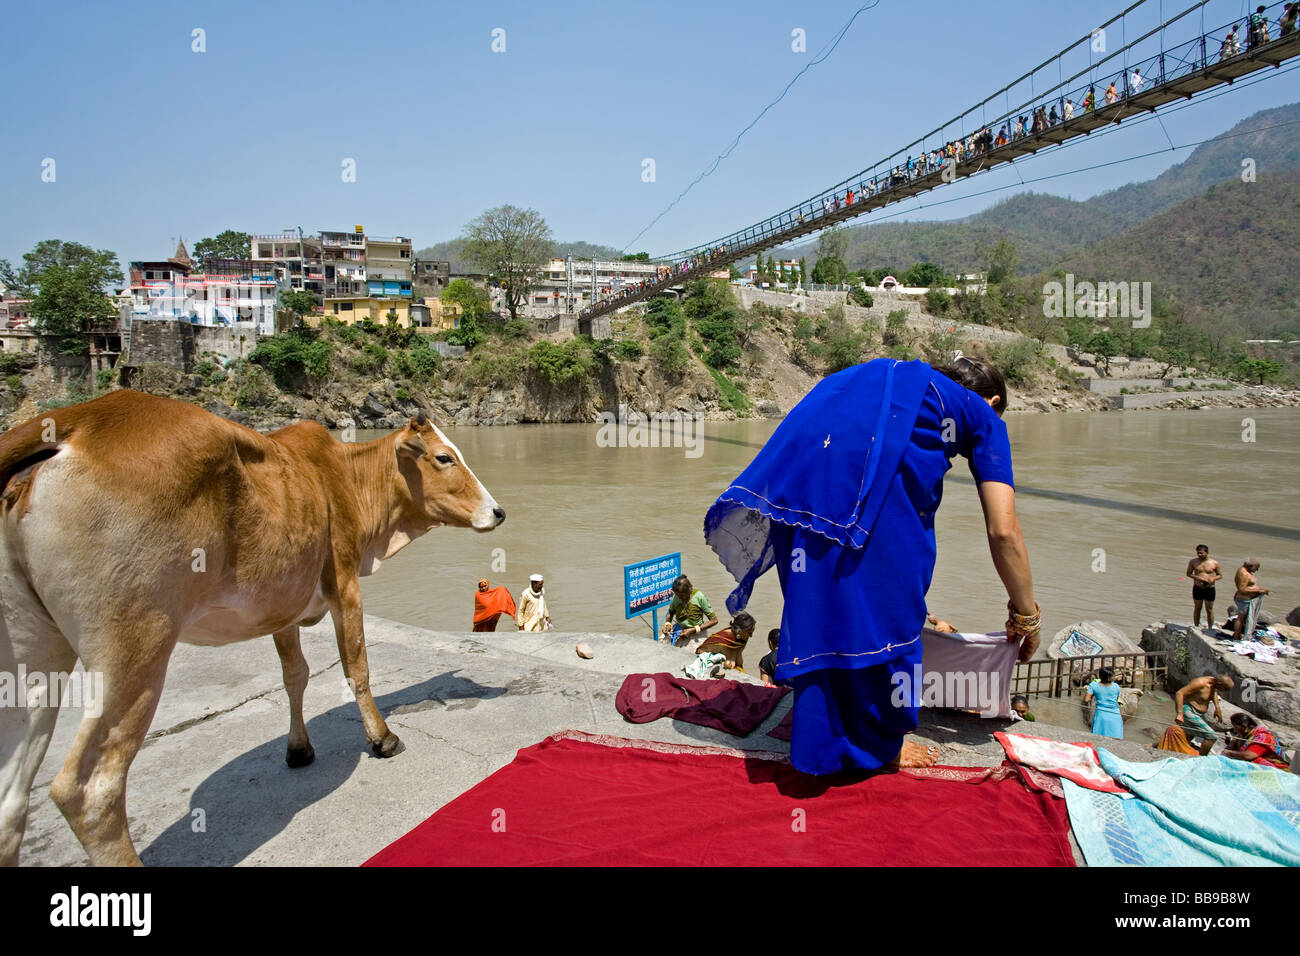 Le séchage des vêtements femme. Gange. Lakshman Jhula. Rishikesh. Uttarakhand. L'Inde Banque D'Images